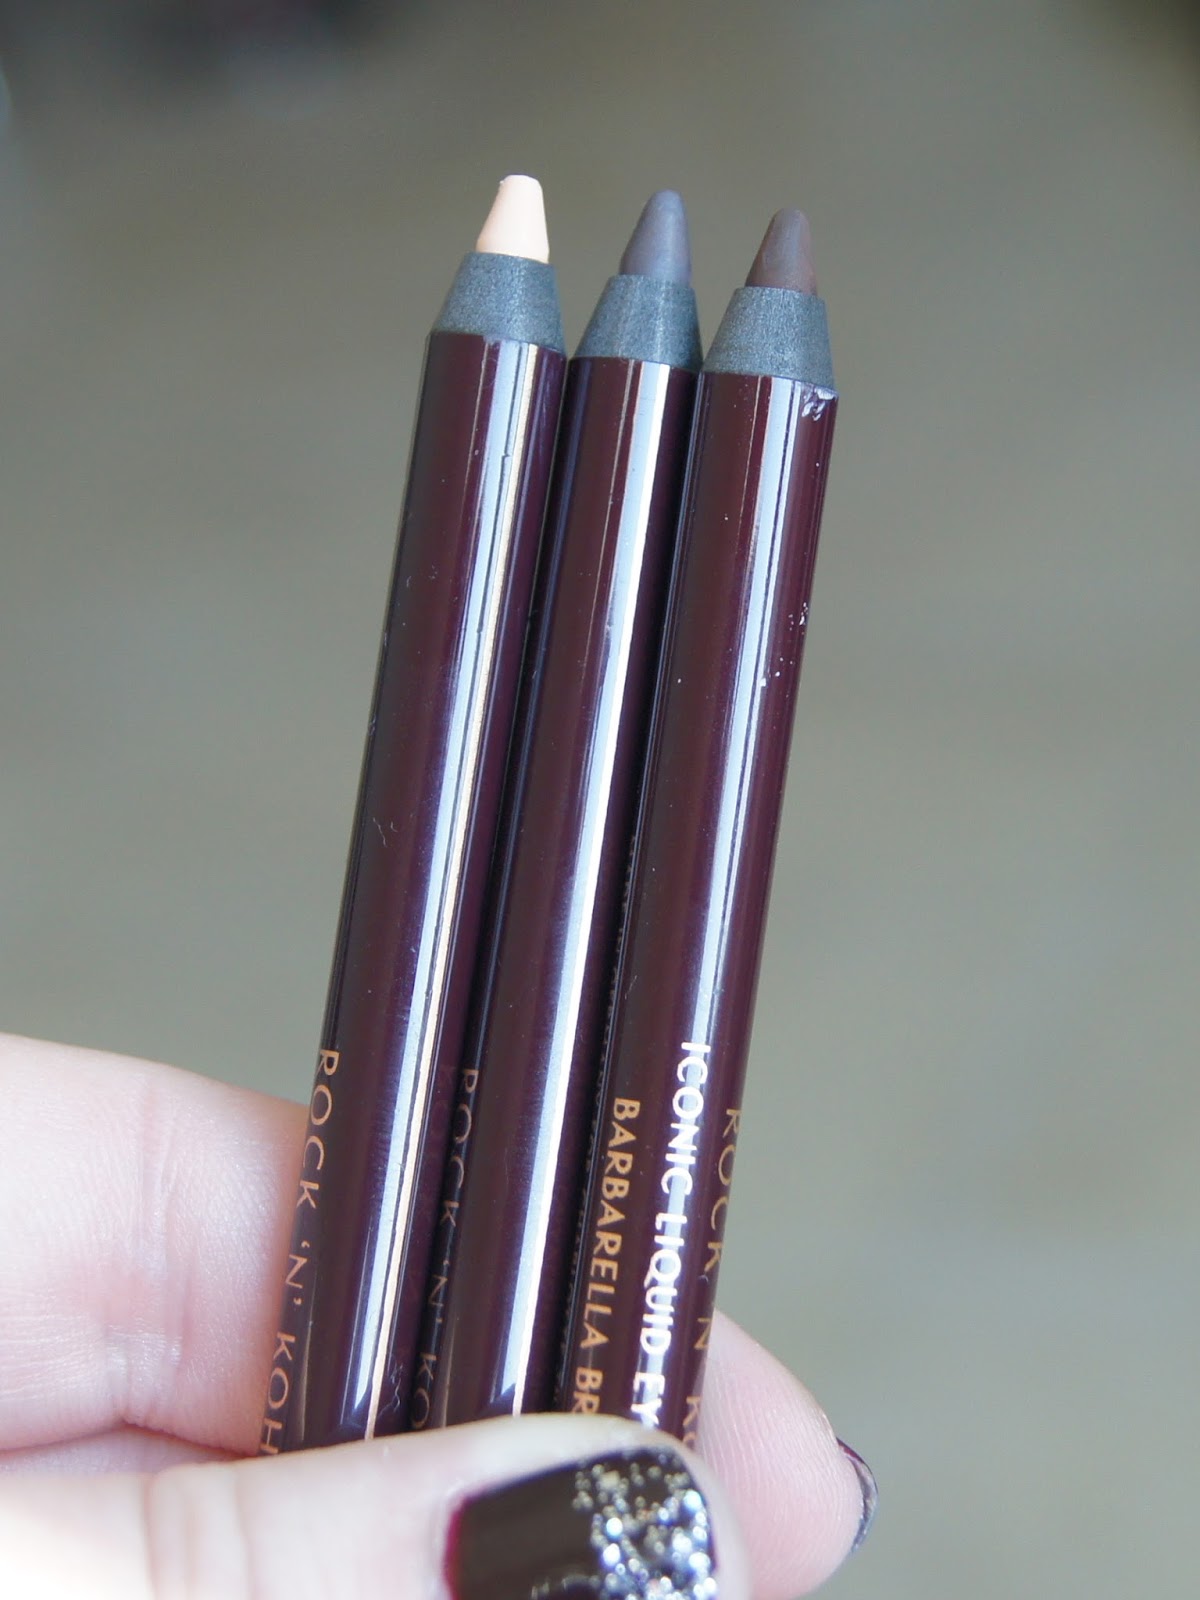 Charlotte Tilbury Rock n Kohl iconic liquid eye pencil review